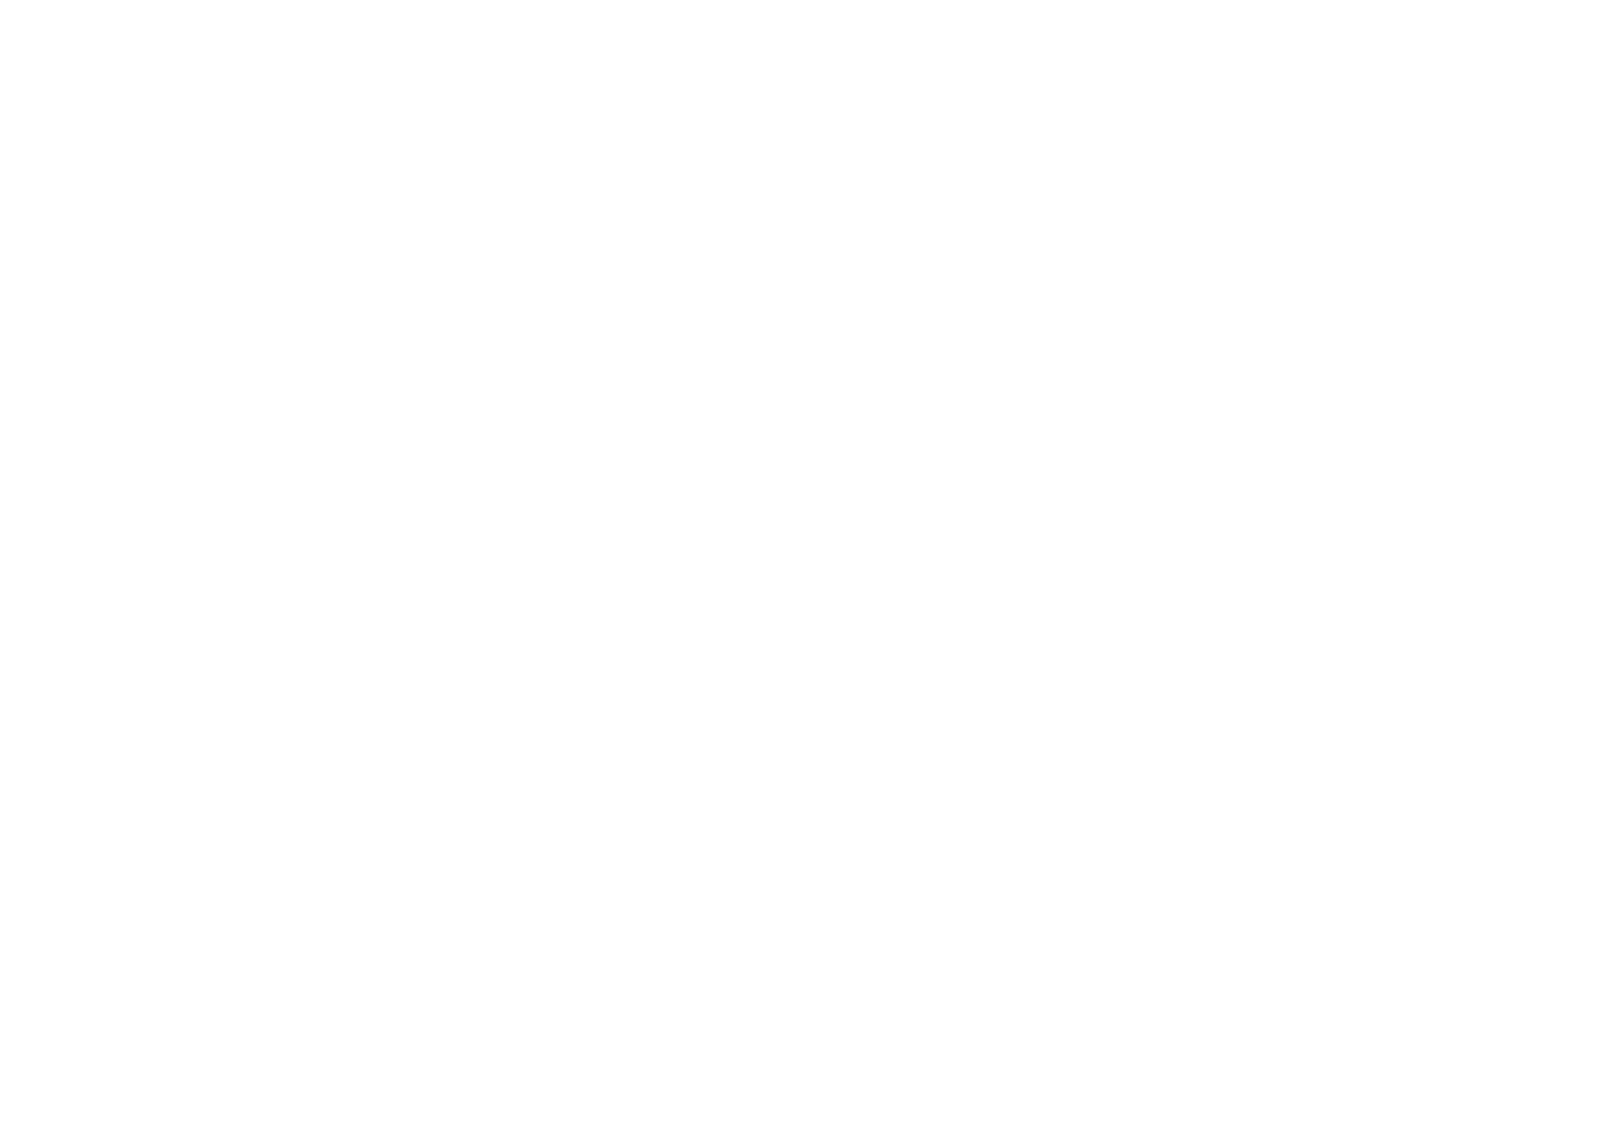 Cochlear logo grand pour les fonds sombres (PNG transparent)